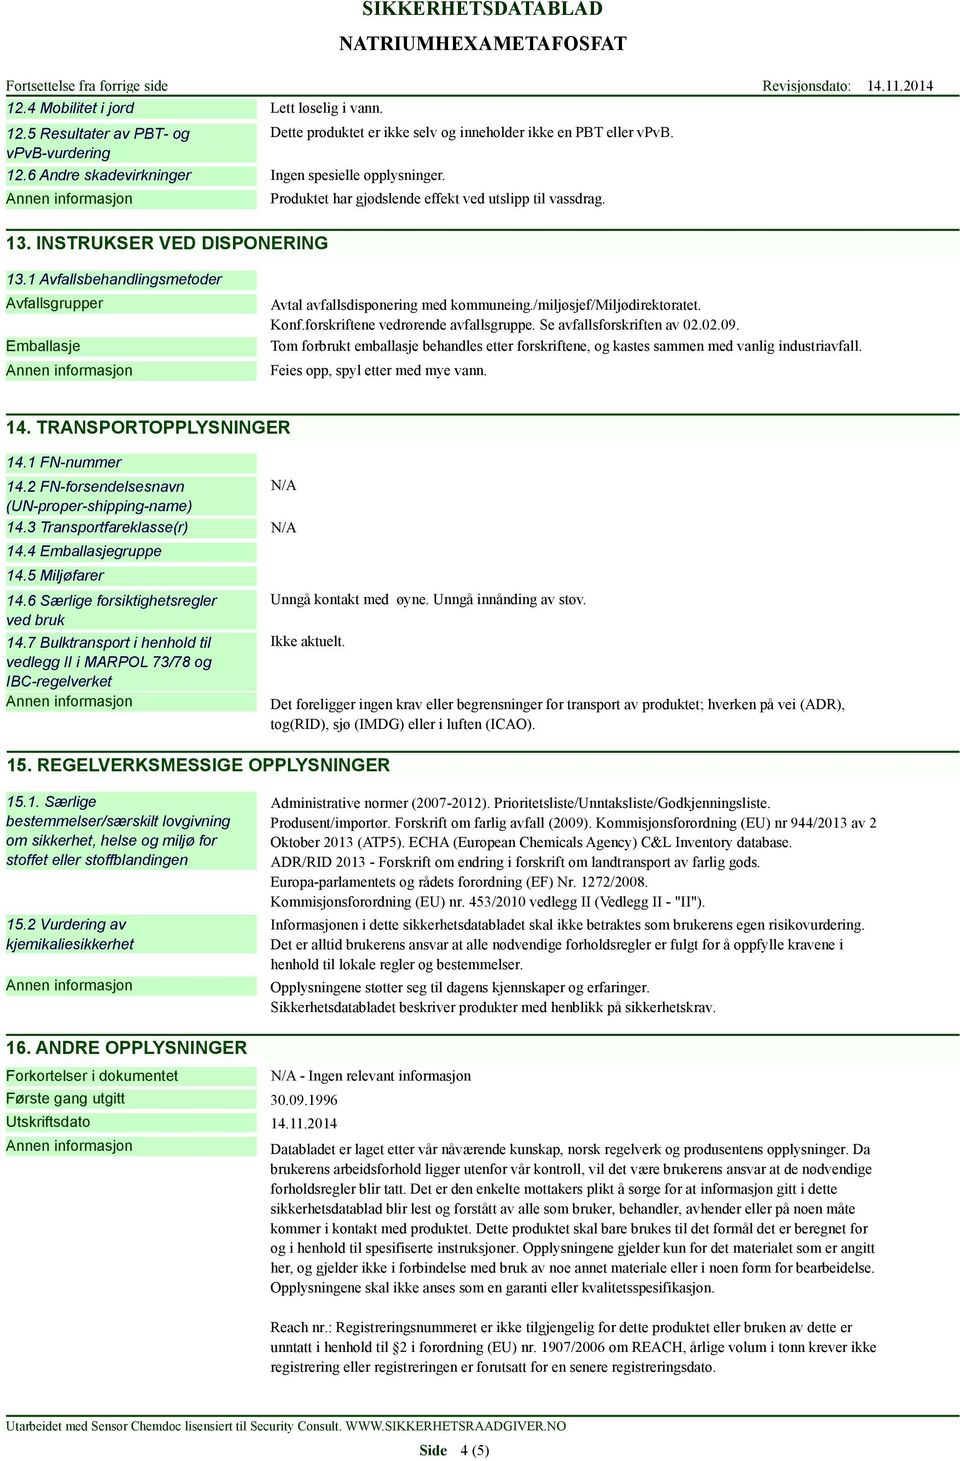 /miljøsjef/miljødirektoratet. Konf.forskriftene vedrørende avfallsgruppe. Se avfallsforskriften av 02.02.09.